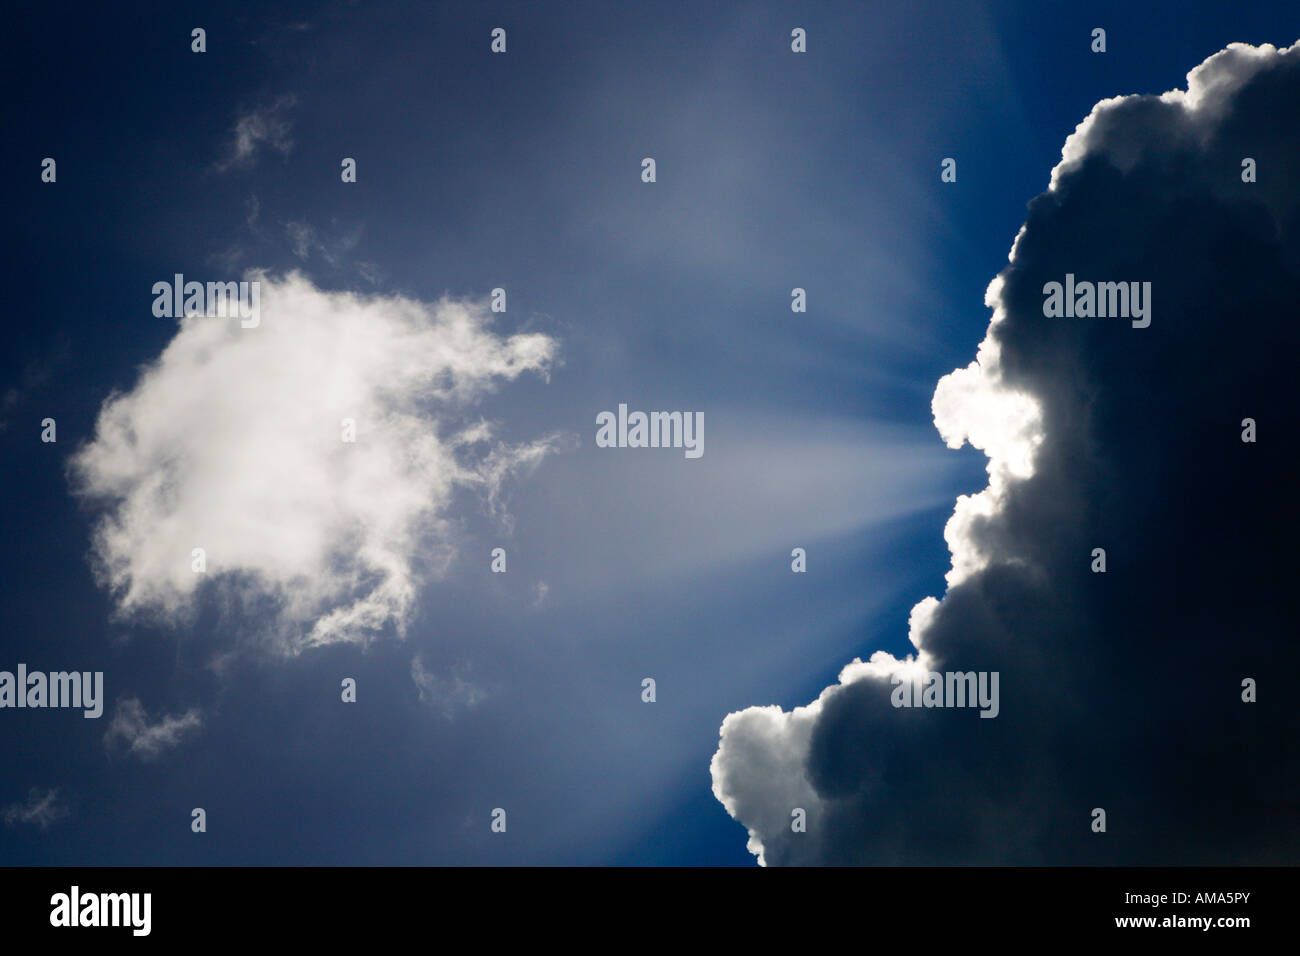 Haces de luz solar que brillan detrás de una nube contra el cielo azul Foto de stock